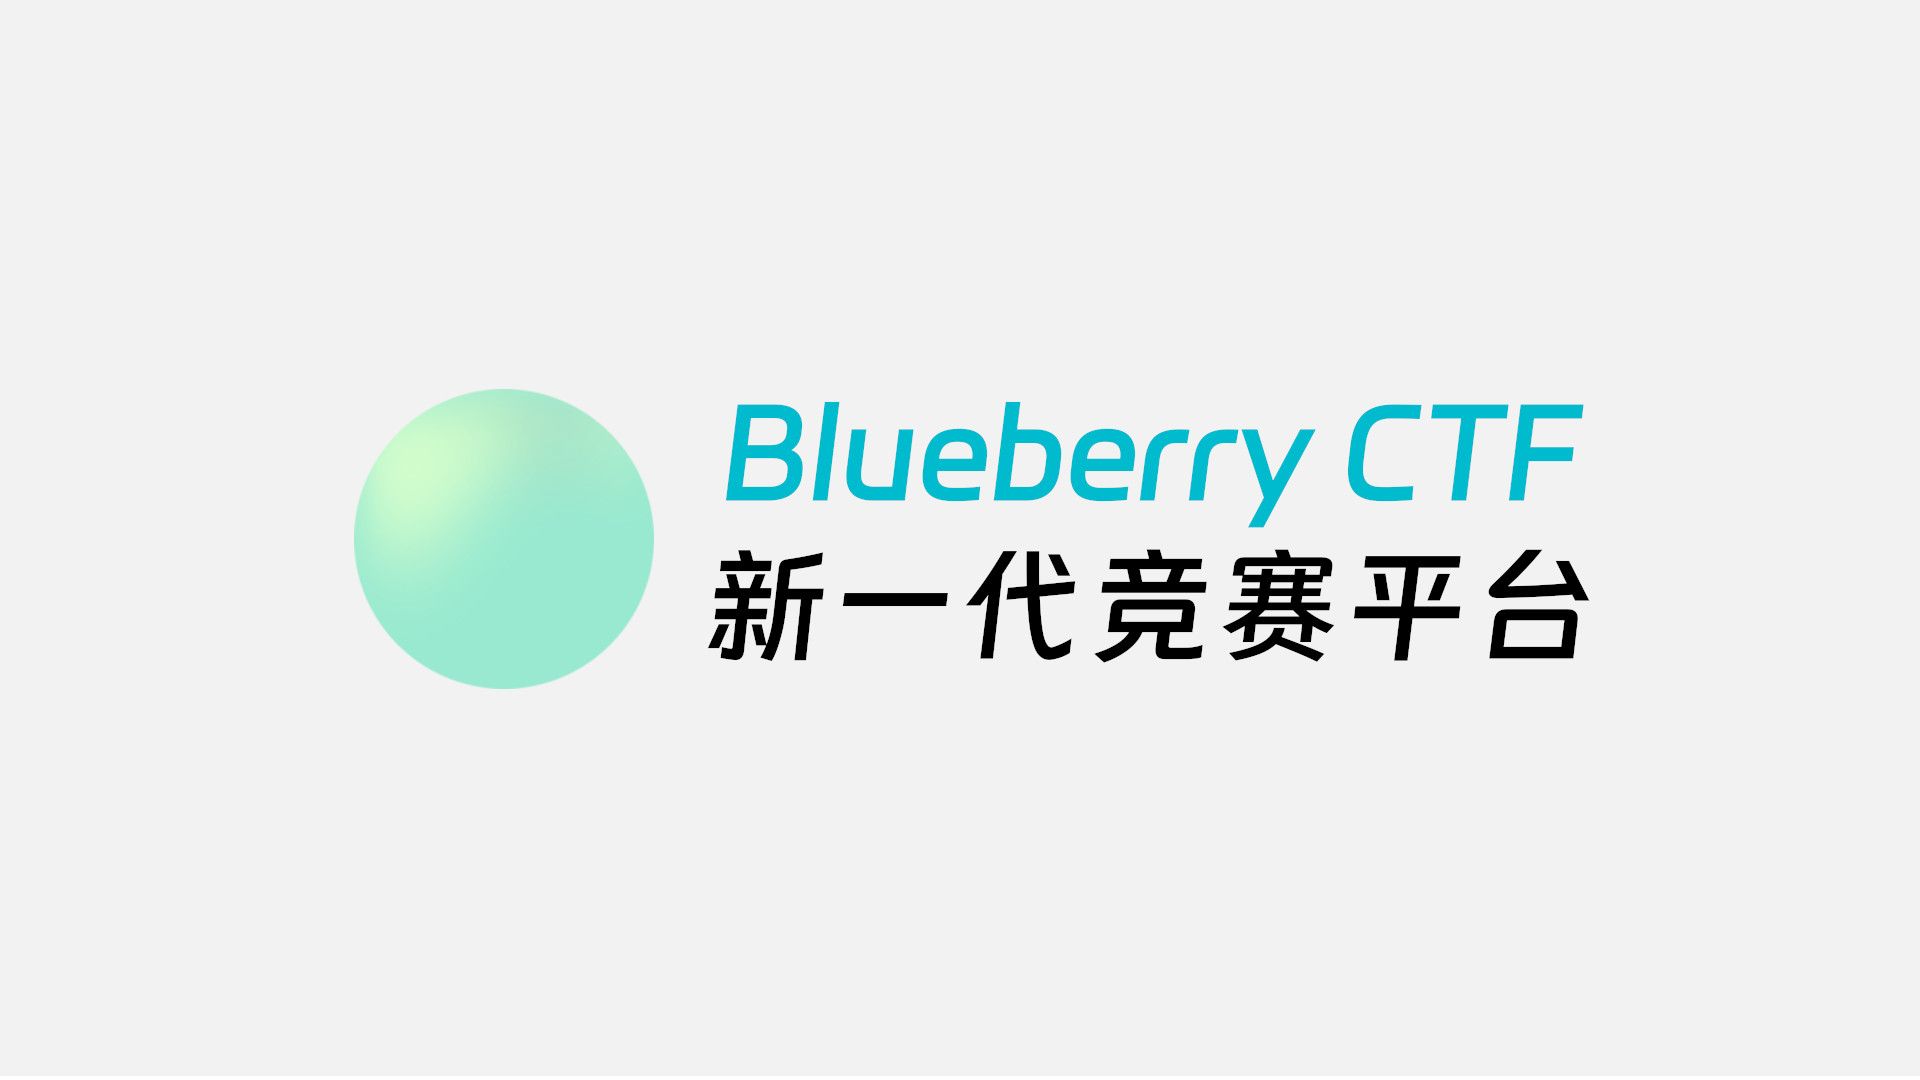 Blueberry CTF 的设计、实现和反思